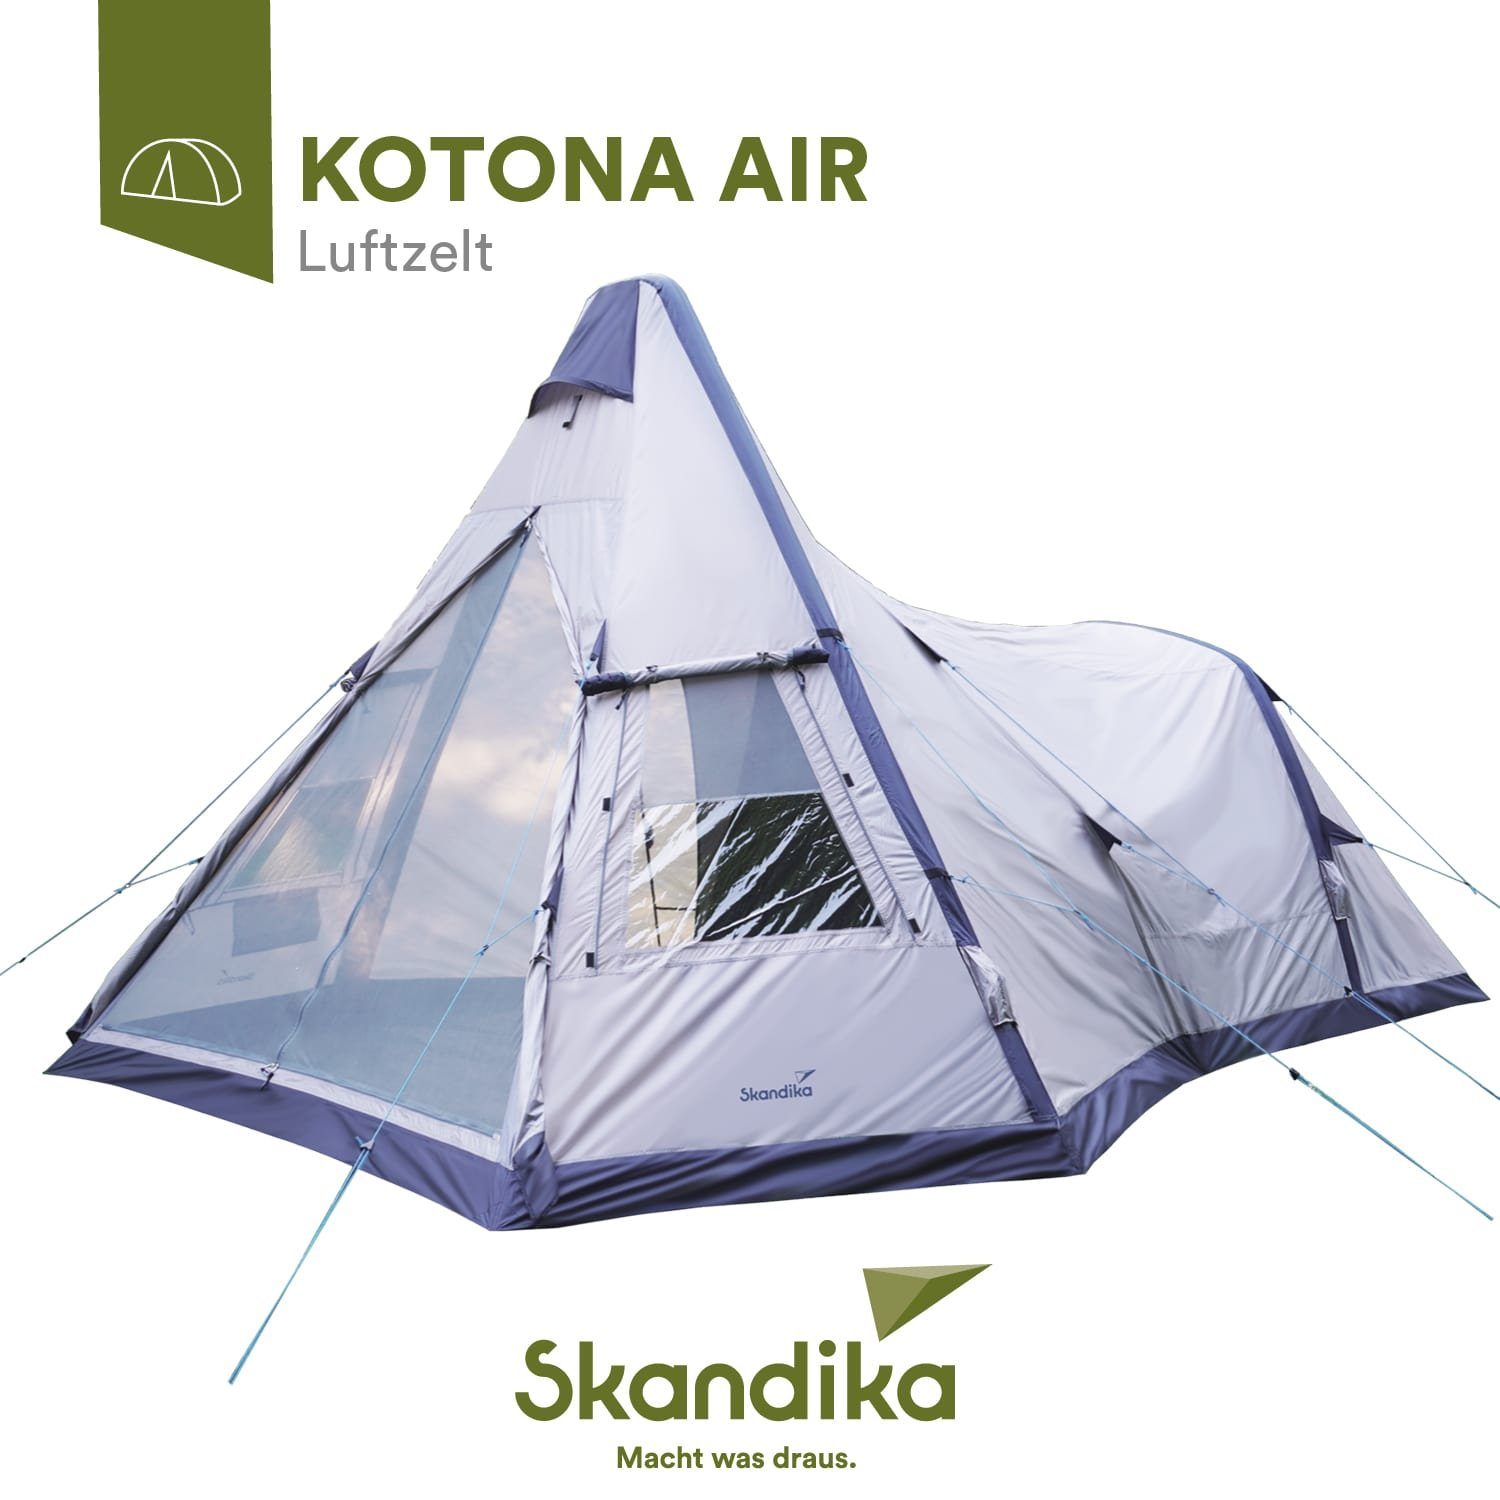 Skandika aufblasbares Zelt Luftzelt Air Tipi Kotona, für 4 Personen,  eingenähter Zeltboden